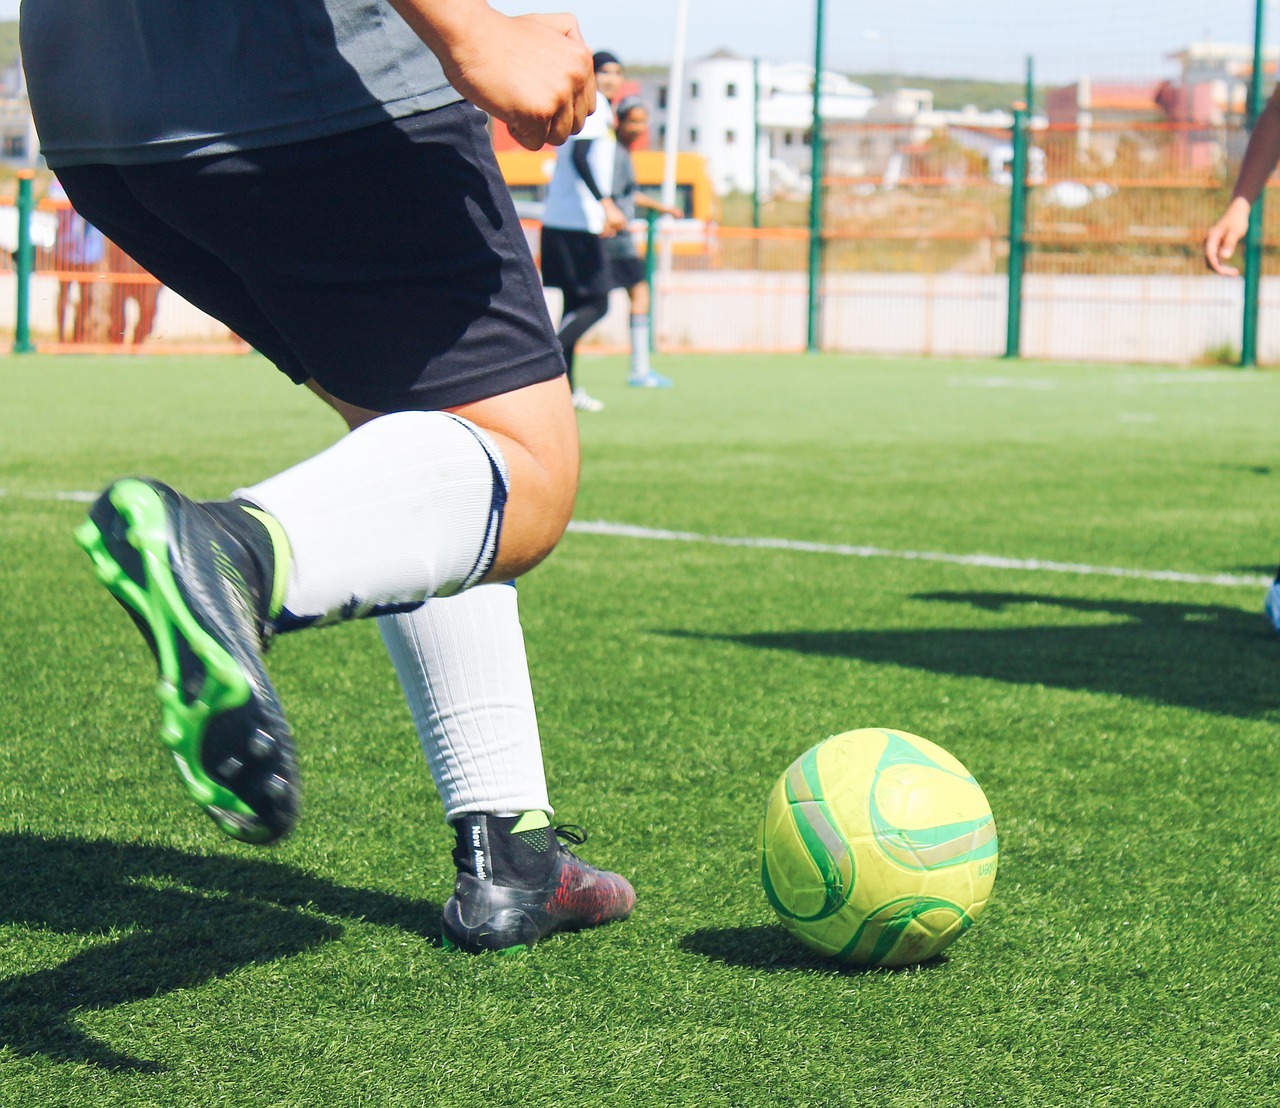 Career Tips For Aspiring Soccer Players